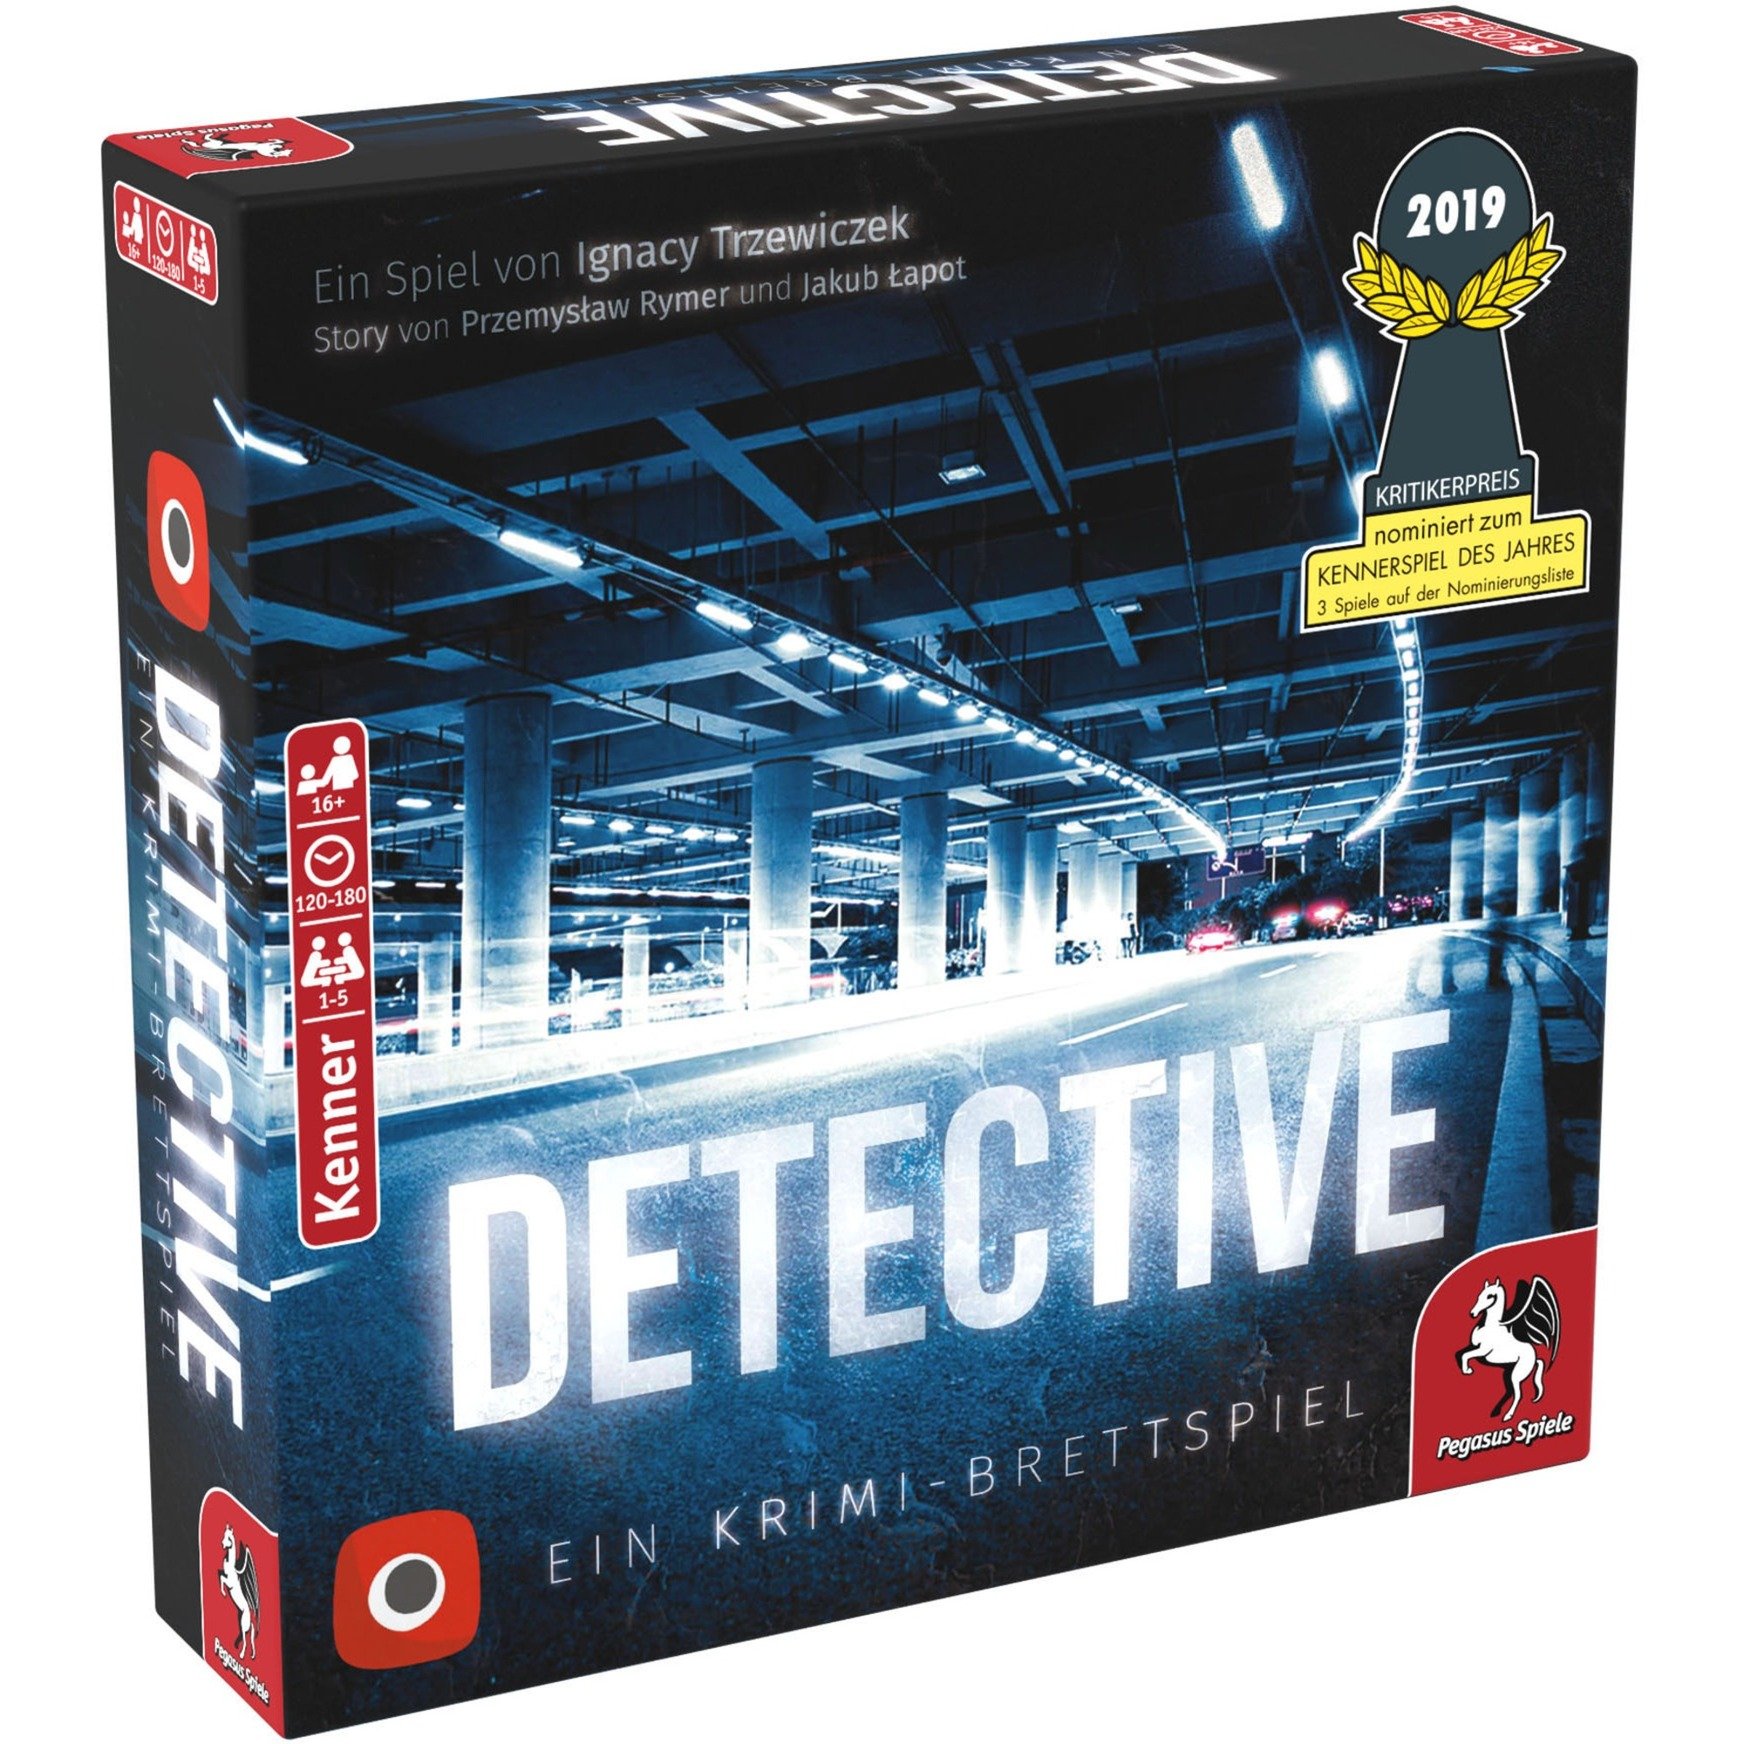 Image of Alternate - Detective, Brettspiel online einkaufen bei Alternate